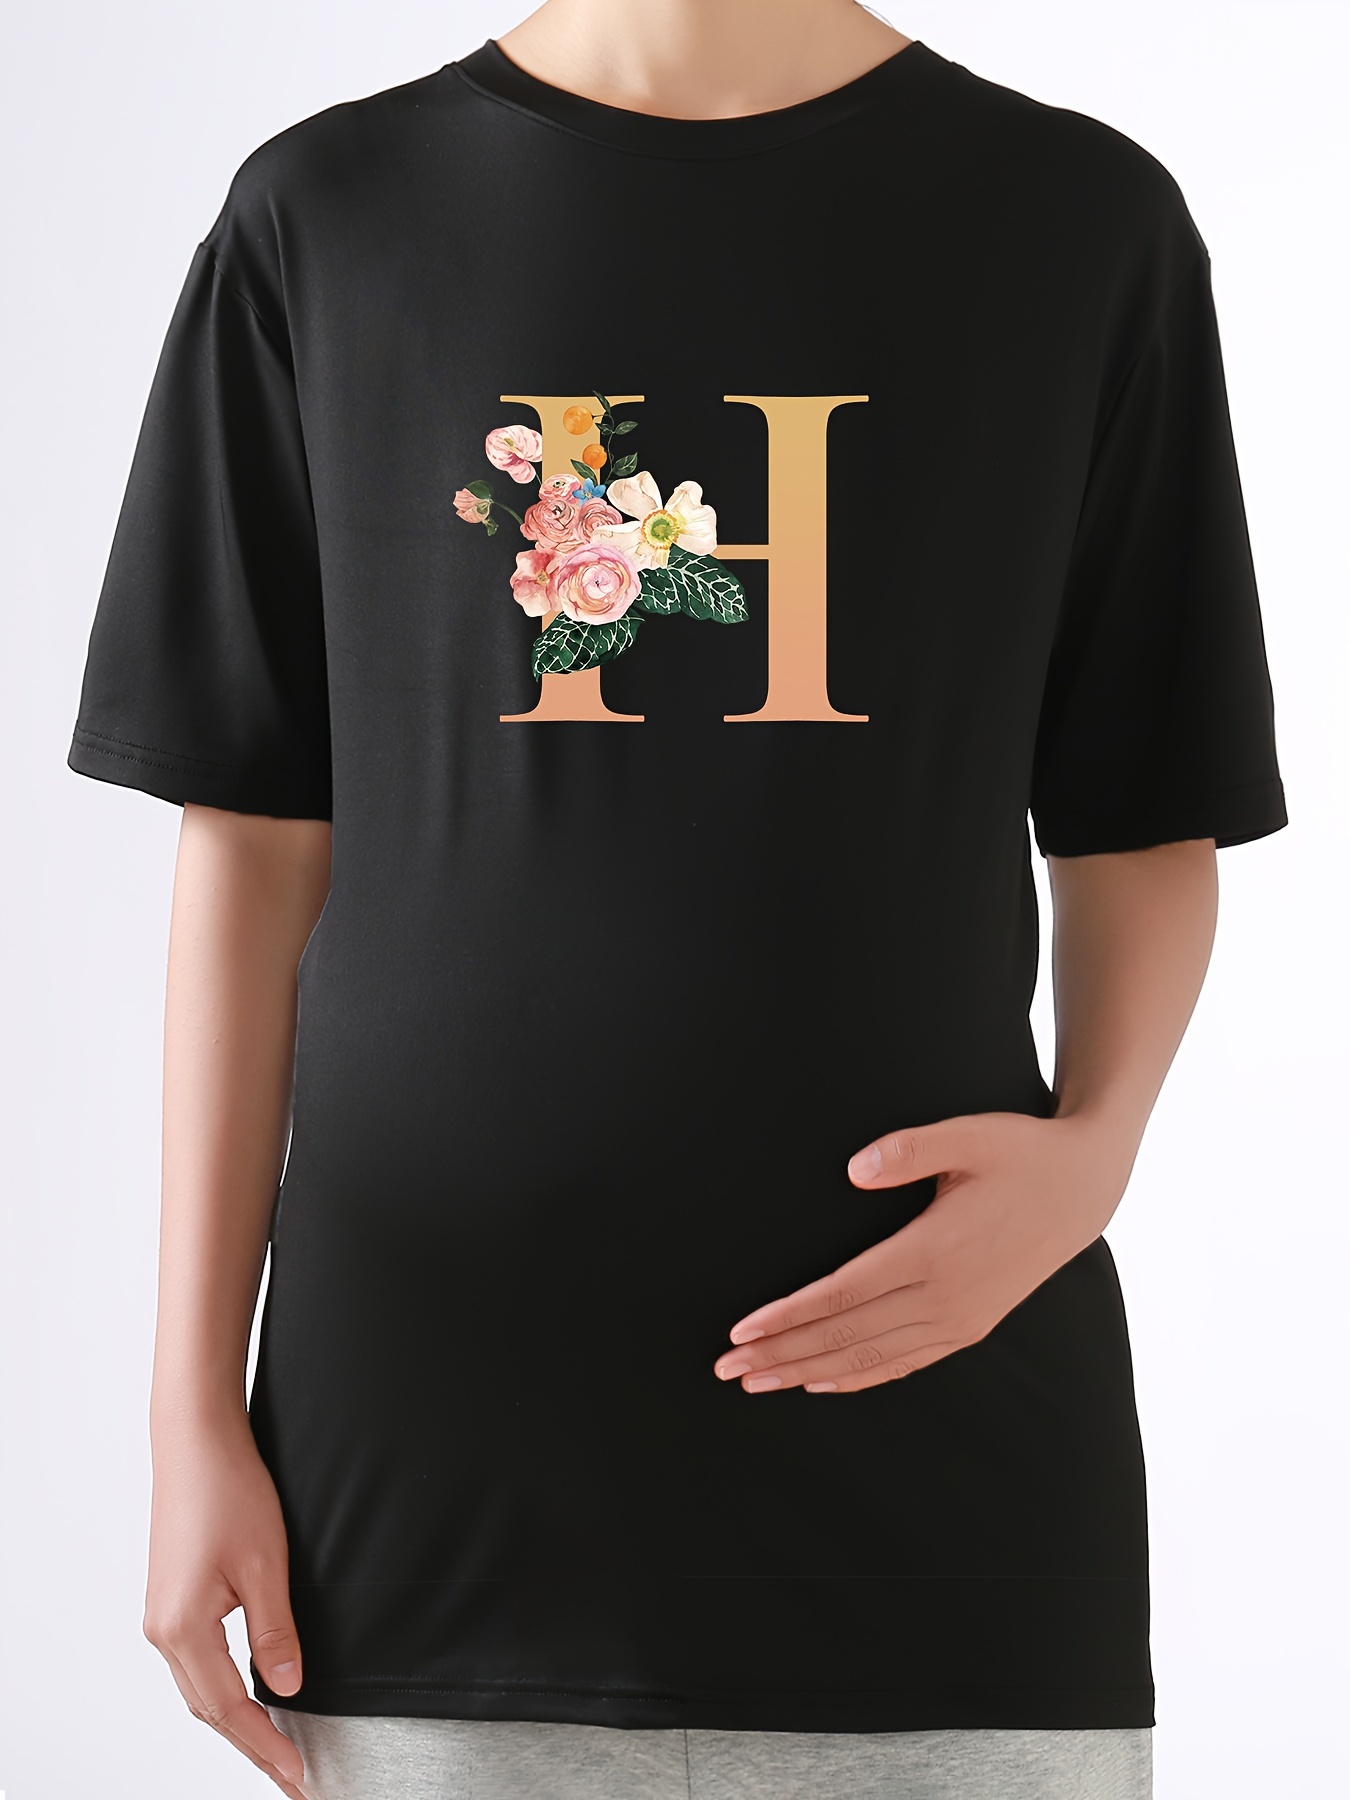  Camisetas de verano de maternidad para mujer